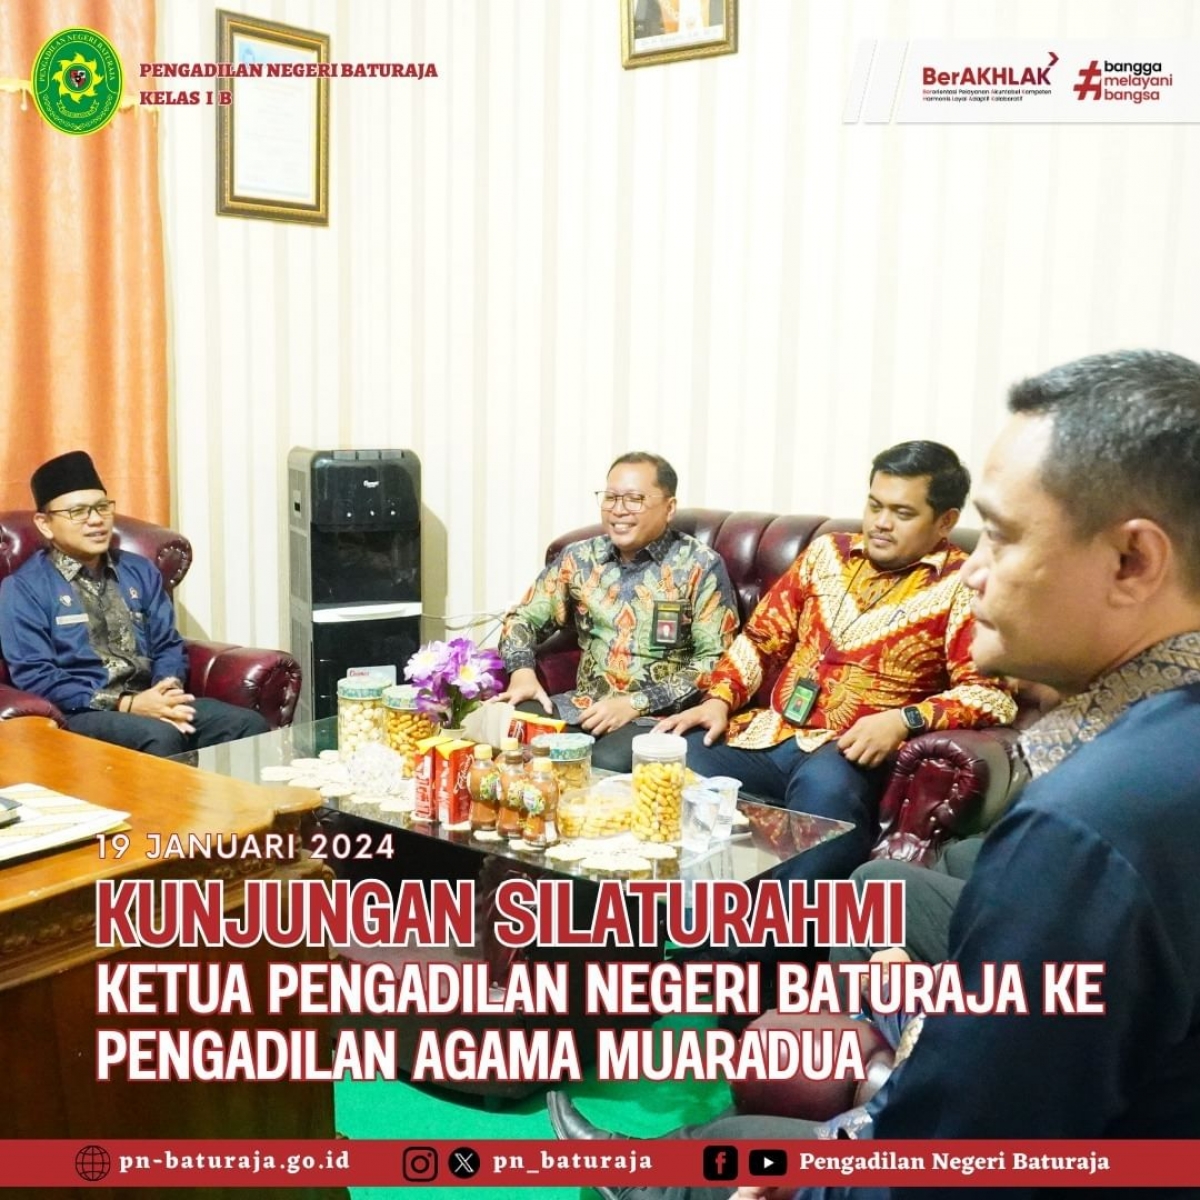 Kunjungan Silaturahmi Ketua Pengadilan Negeri Baturaja Ke Pengadilan Agama Muaradua